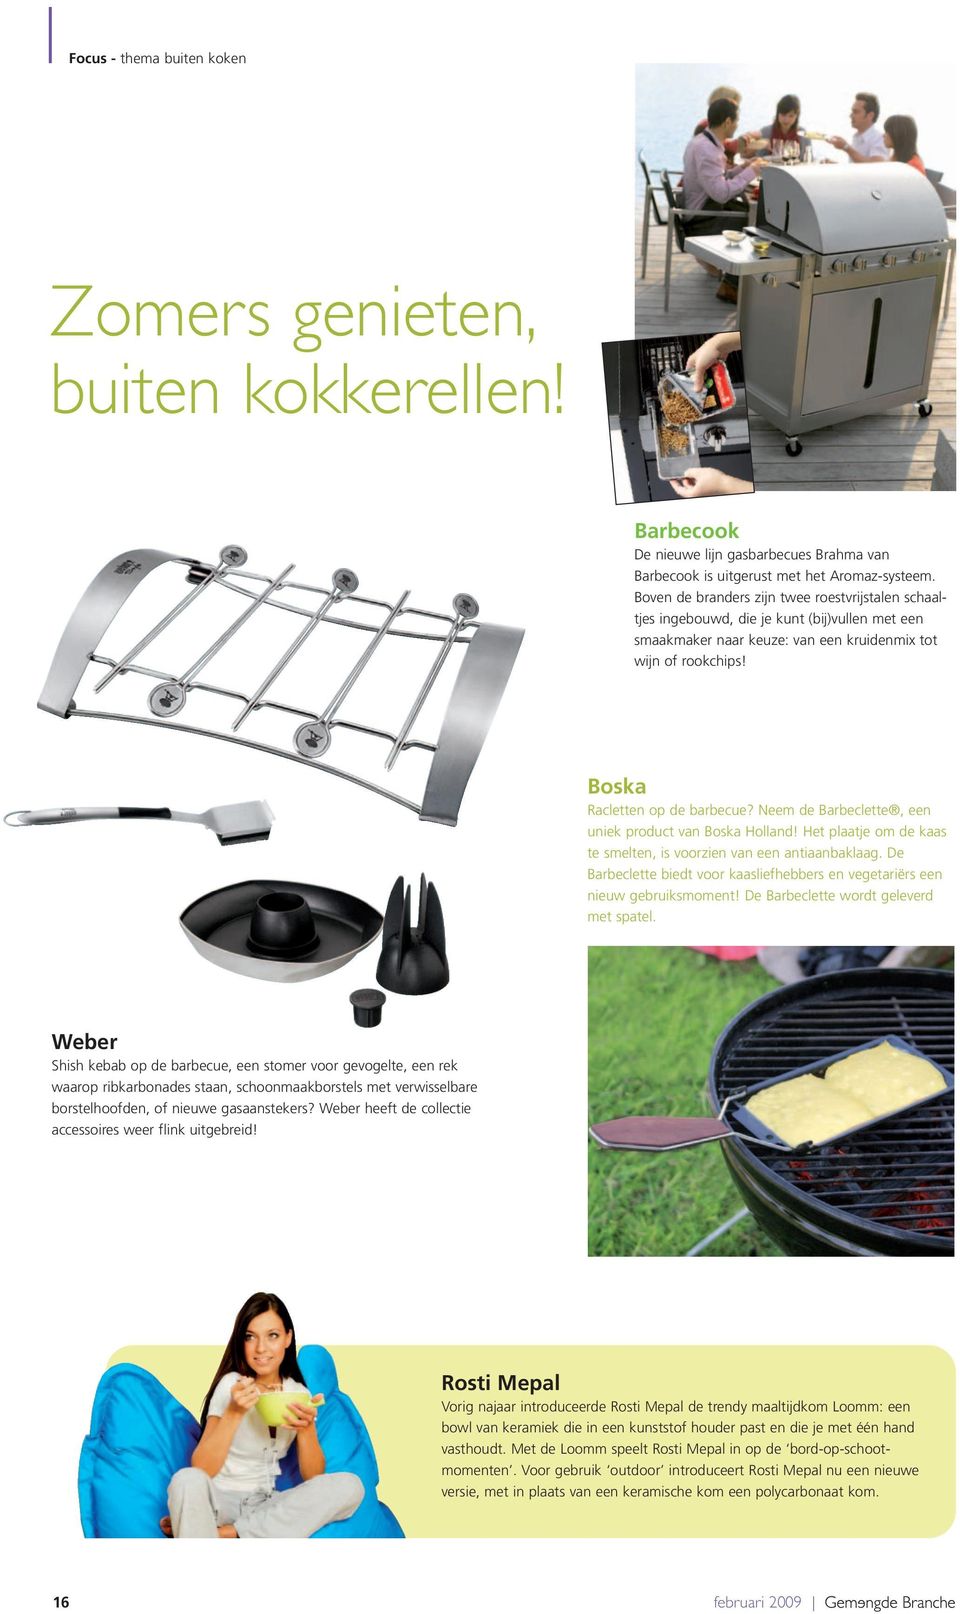 Neem de Barbeclette, een uniek product van Boska Holland! Het plaatje om de kaas te smelten, is voorzien van een antiaanbaklaag.